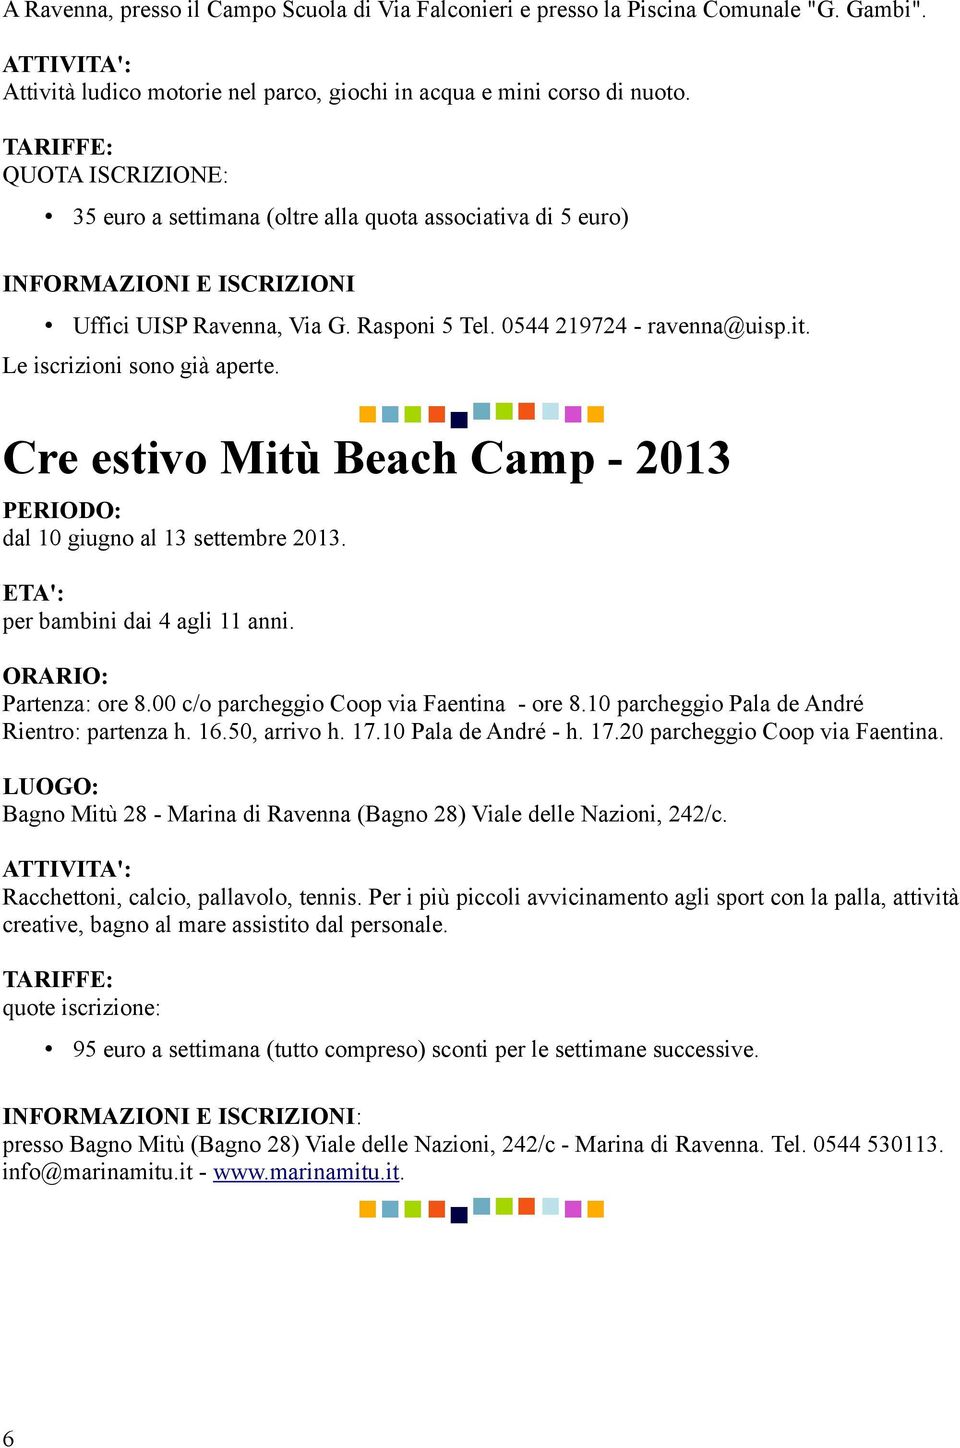 Le iscrizioni sono già aperte. Cre estivo Mitù Beach Camp - 2013 dal 10 giugno al 13 settembre 2013. per bambini dai 4 agli 11 anni. Partenza: ore 8.00 c/o parcheggio Coop via Faentina - ore 8.